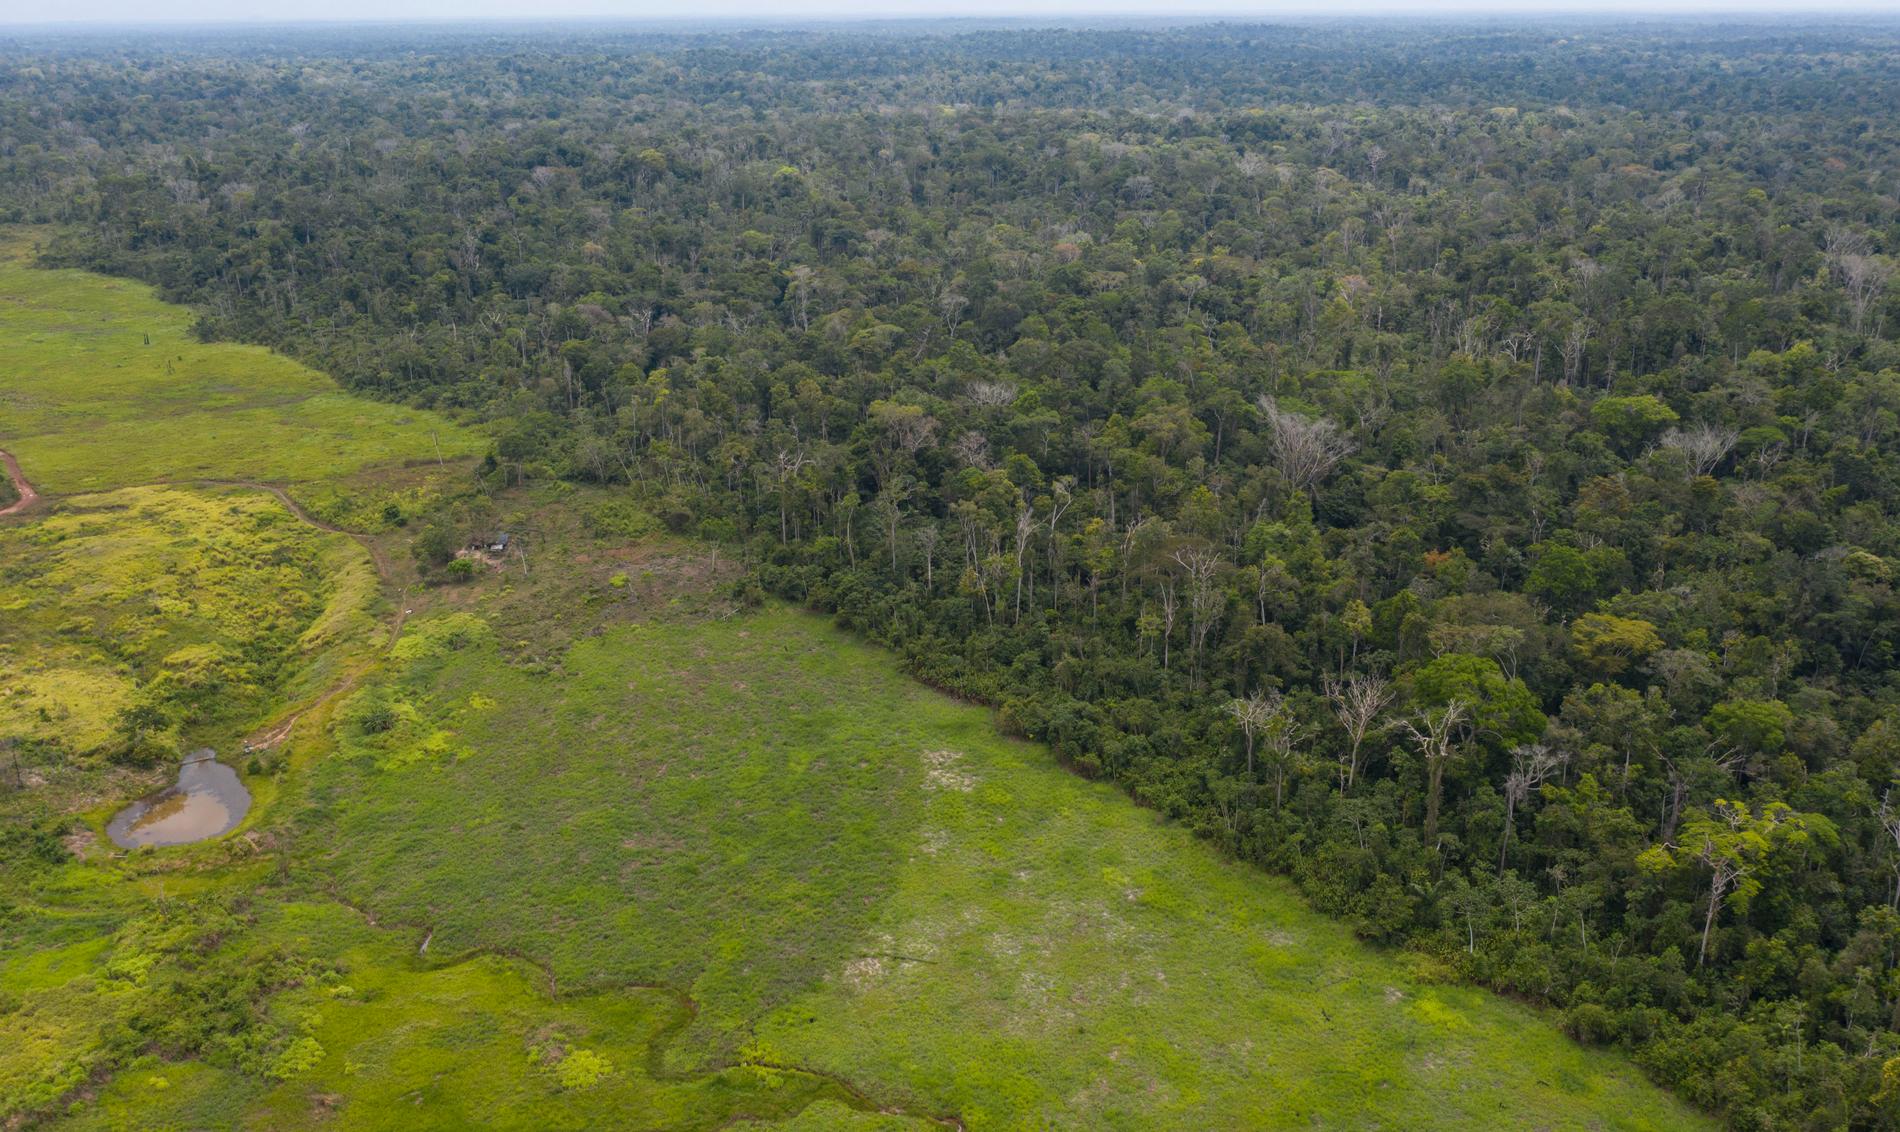 Avskogningen i Amazonas har ökat stort under 2019, enligt preliminära brasilianska data. Bild tagen i september 2019 i delstaten Pará.